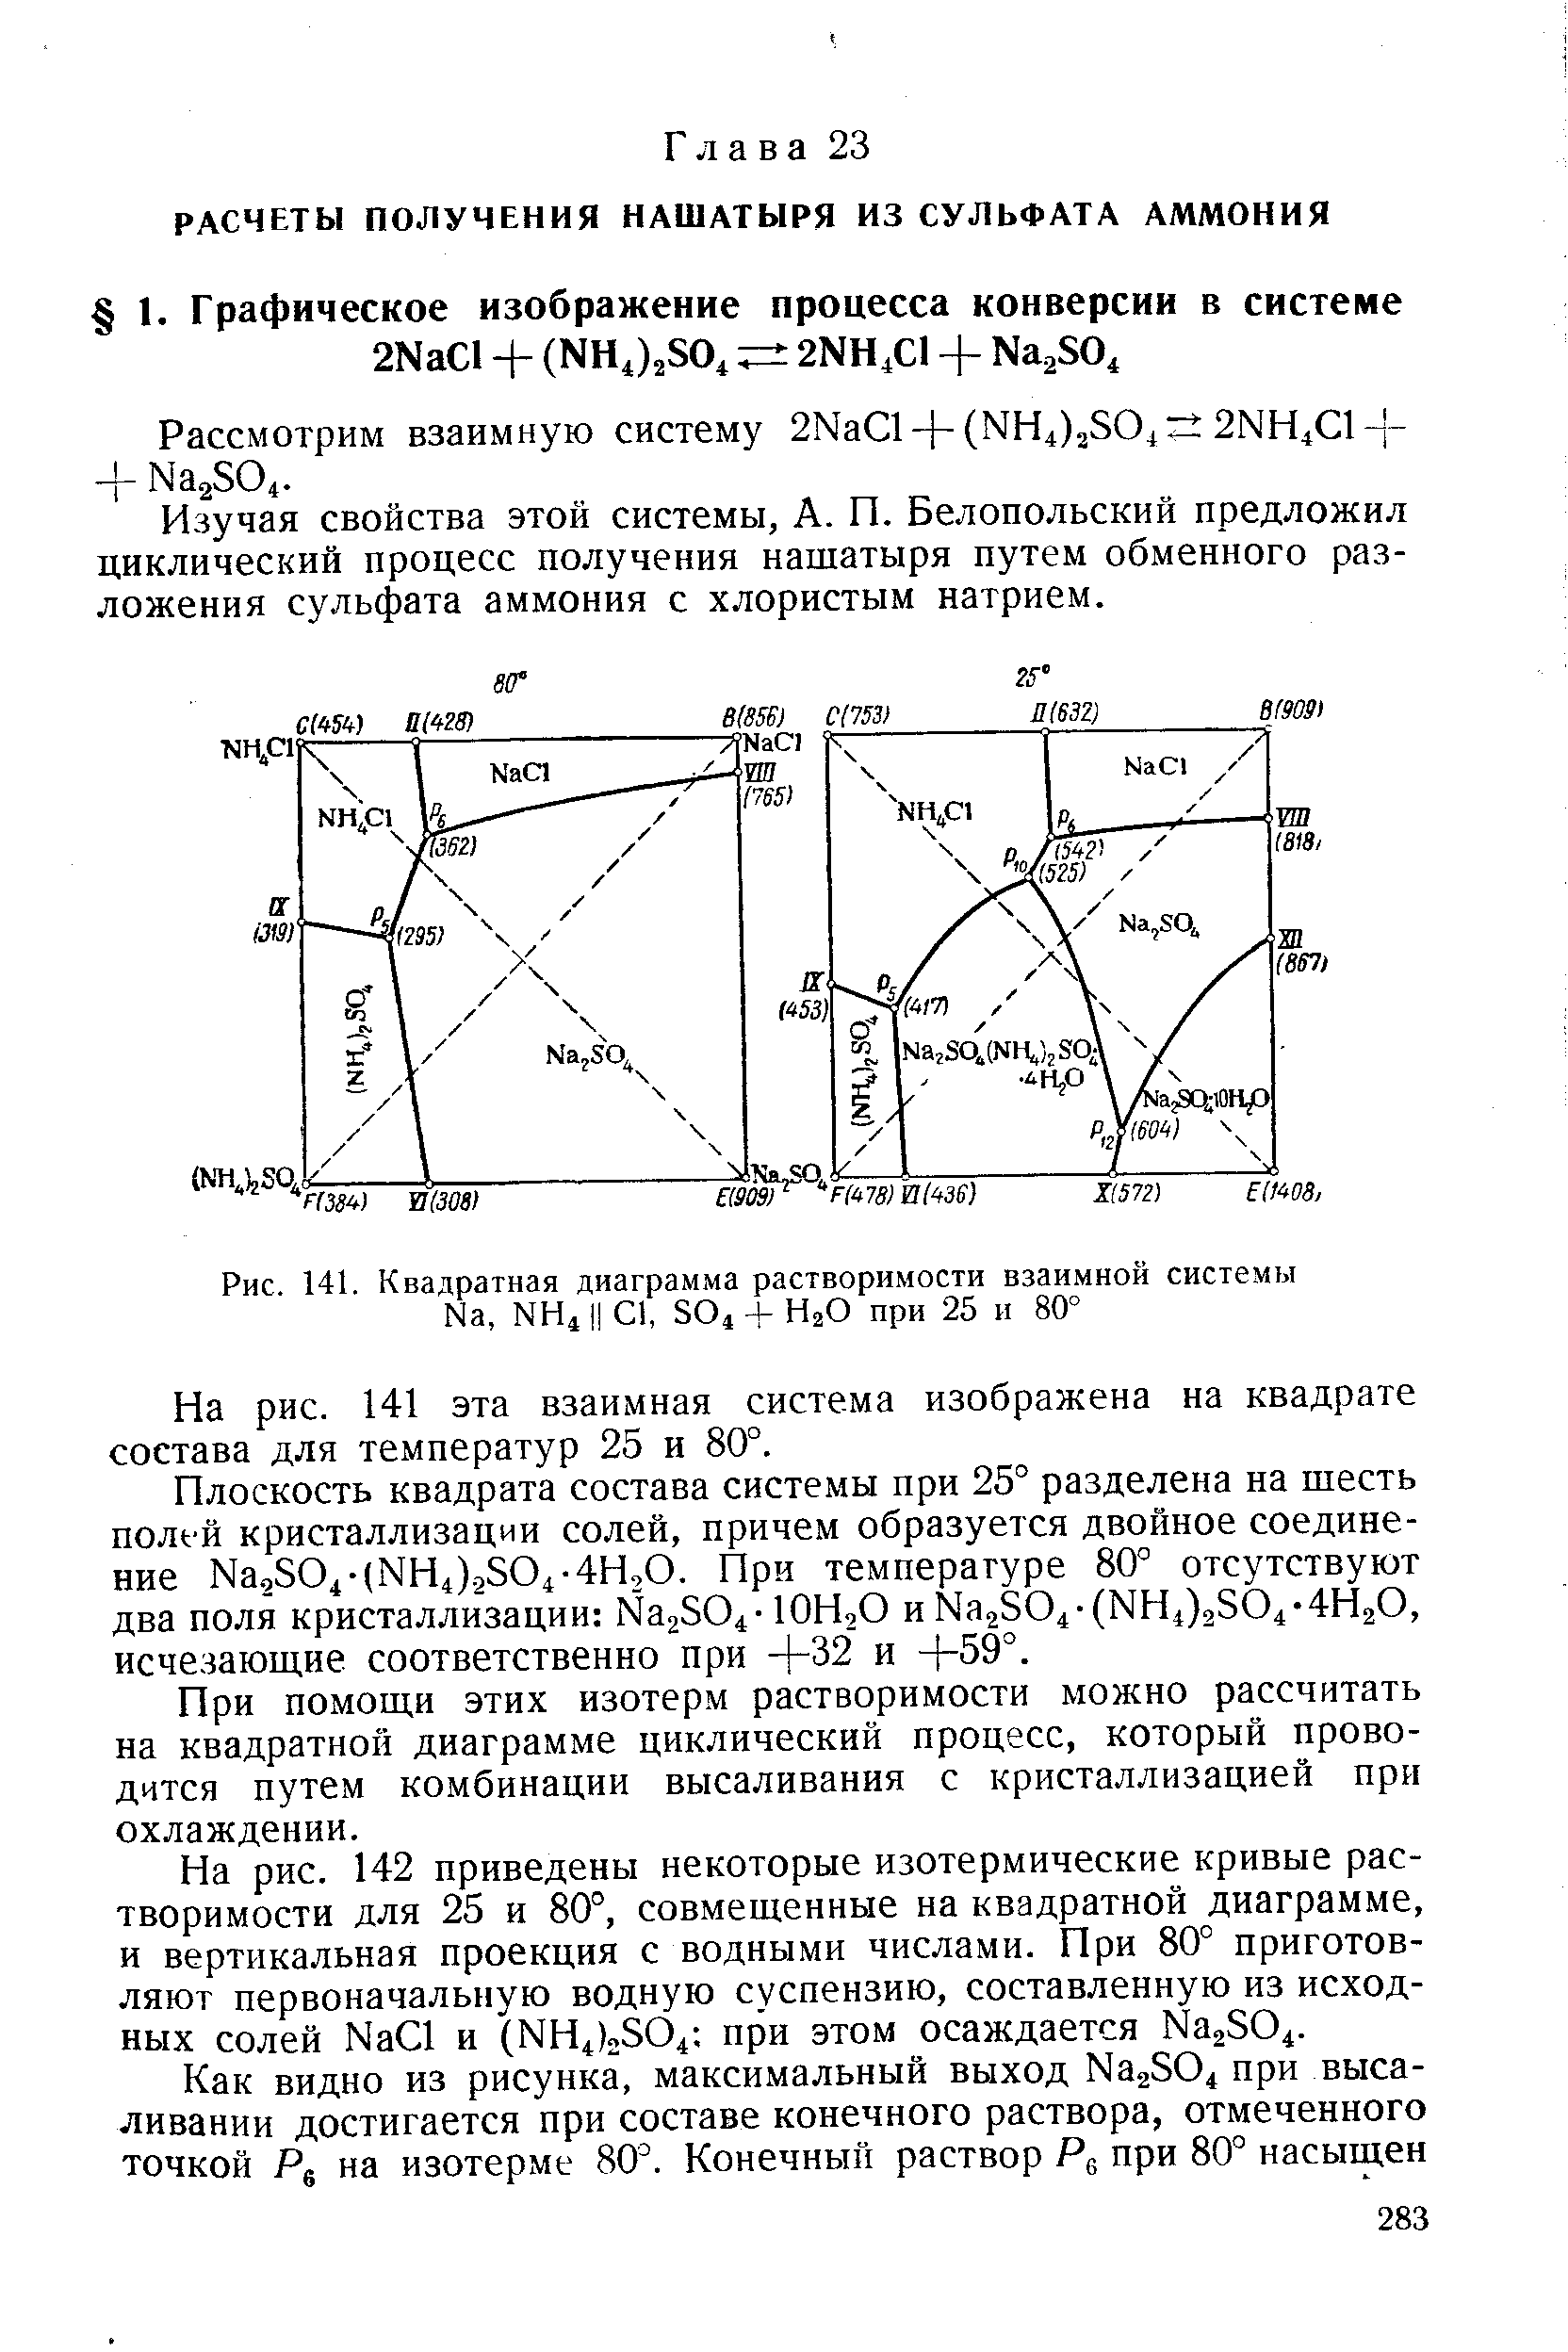 Изучая свойства этой системы, А. П. Белопольский предложил циклический процесс получения нашатыря путем обменного разложения сульфата аммония с хлористым натрием.